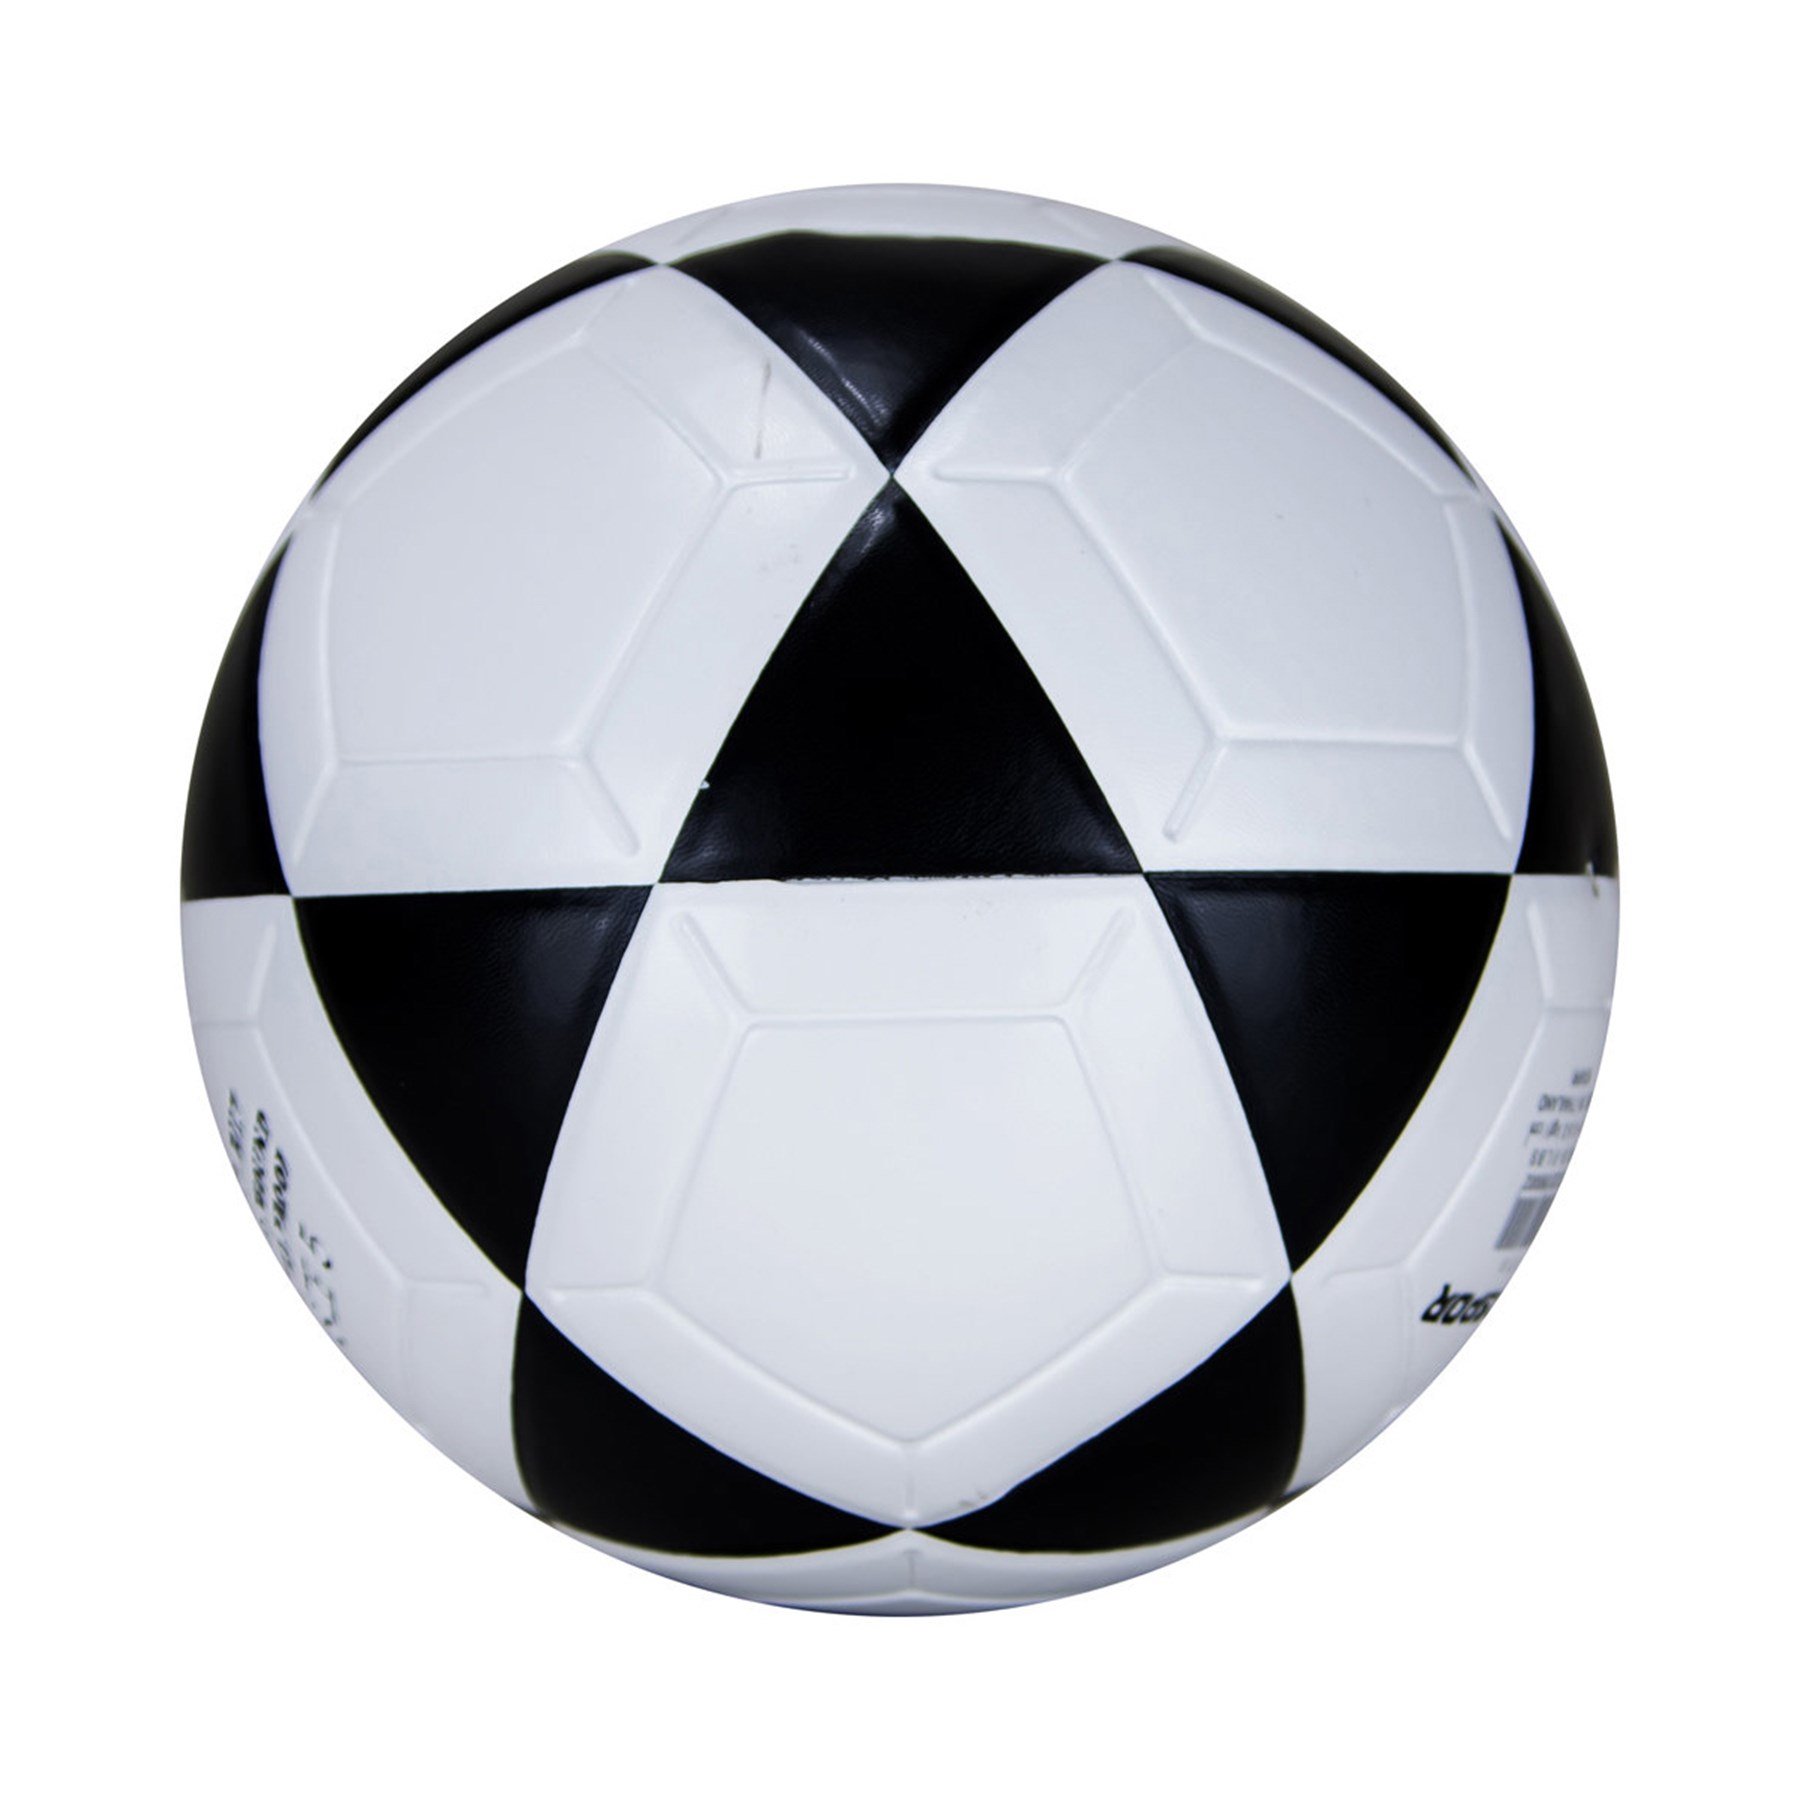 Mikasa Yapıştırma Futbol Topu FT-5